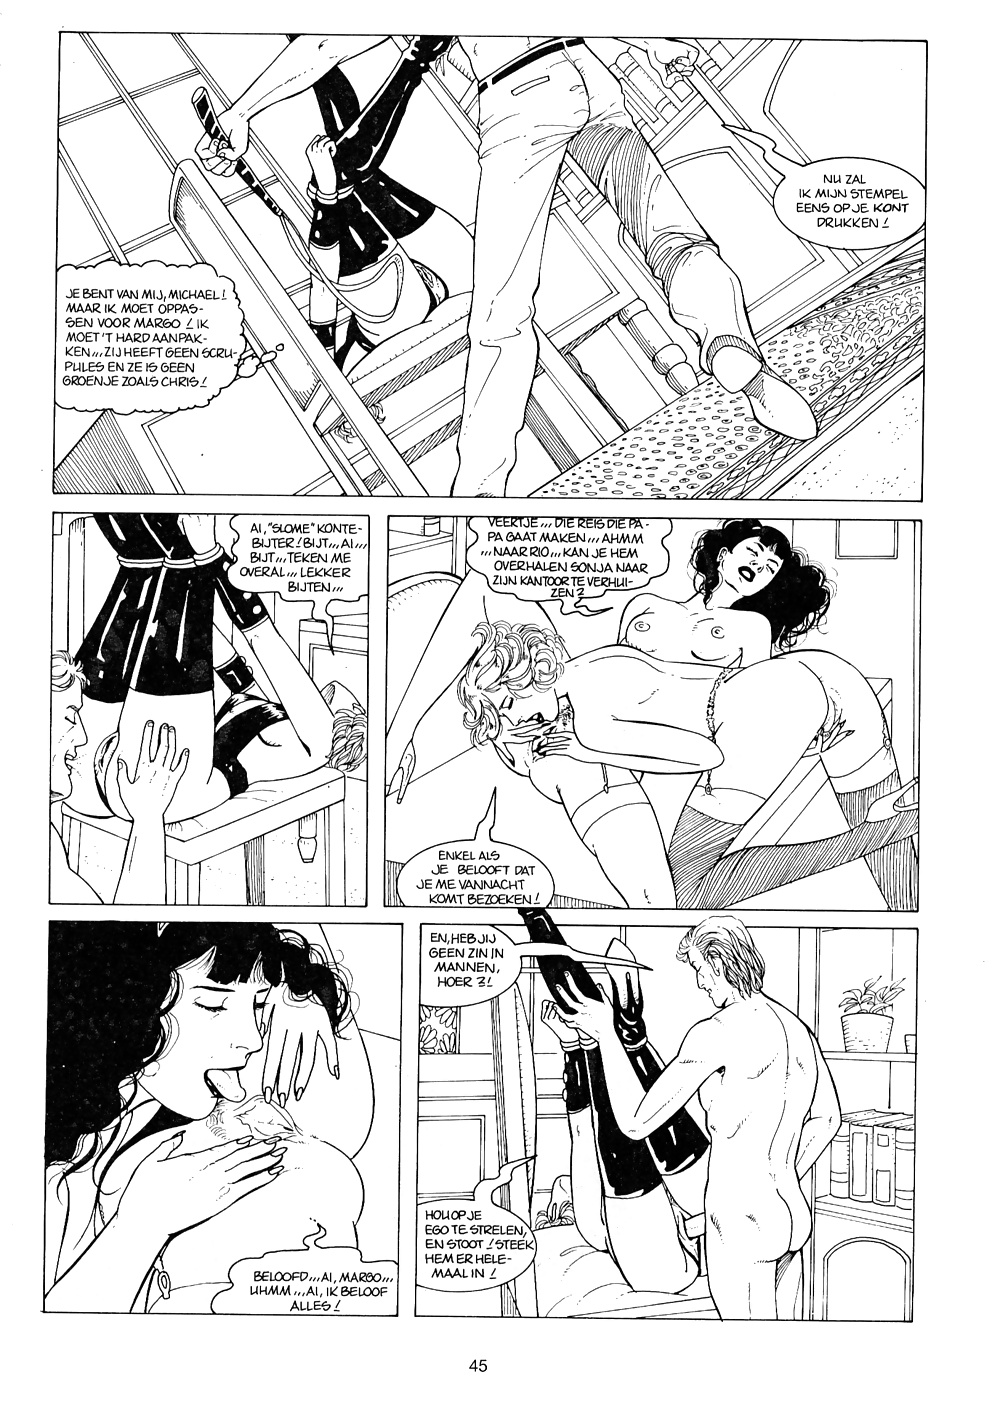 Vintage comic - Bondage Lust #40775572